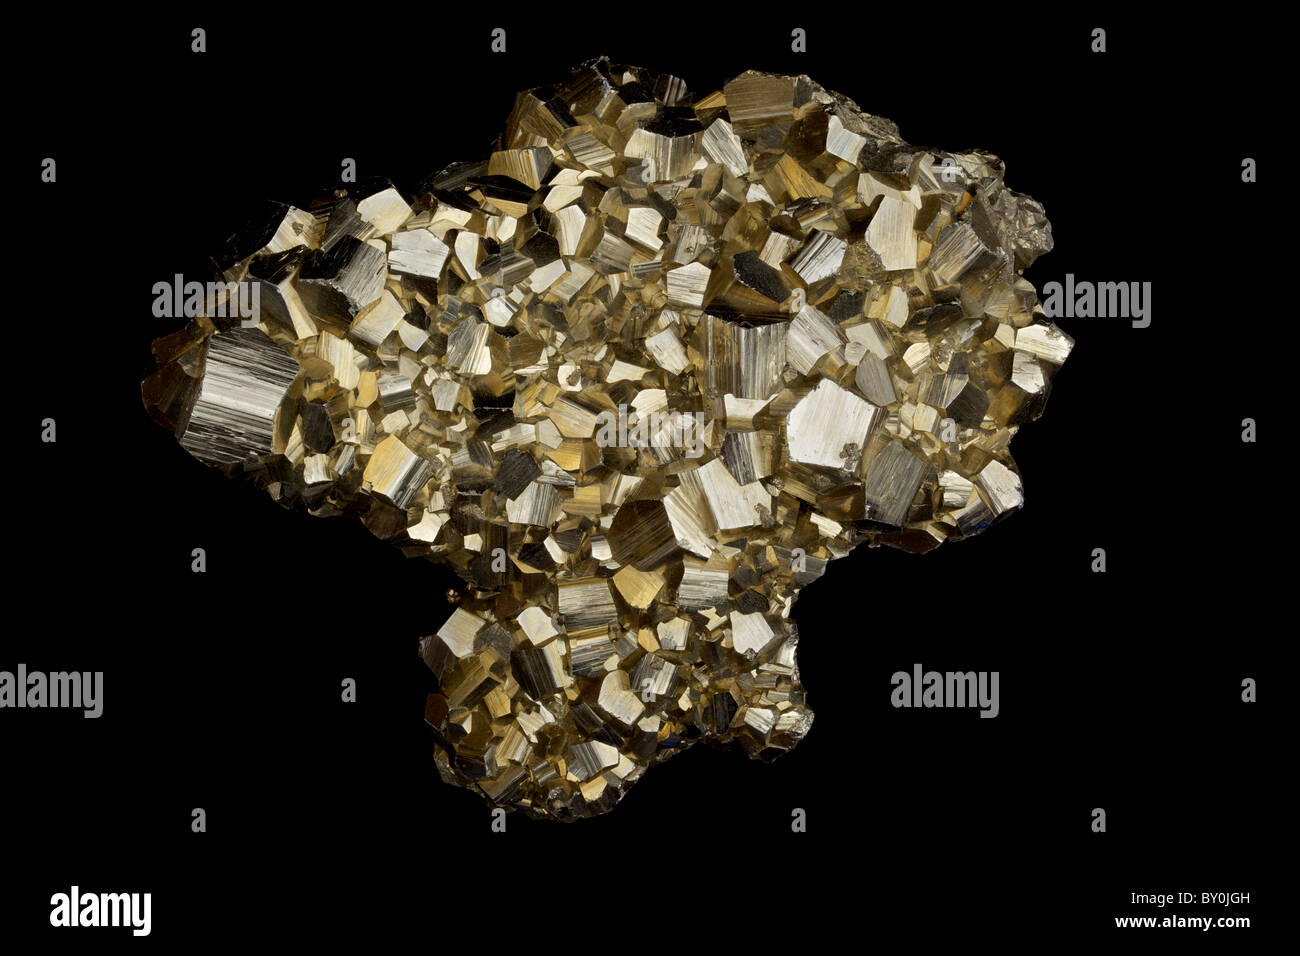 Pyrit (FeS2) (Eisen Sulfid) - Concepcion de Oro - Zacatecas Zustand - Mexiko-im Volksmund bekannt als "Katzengold" Stockfoto